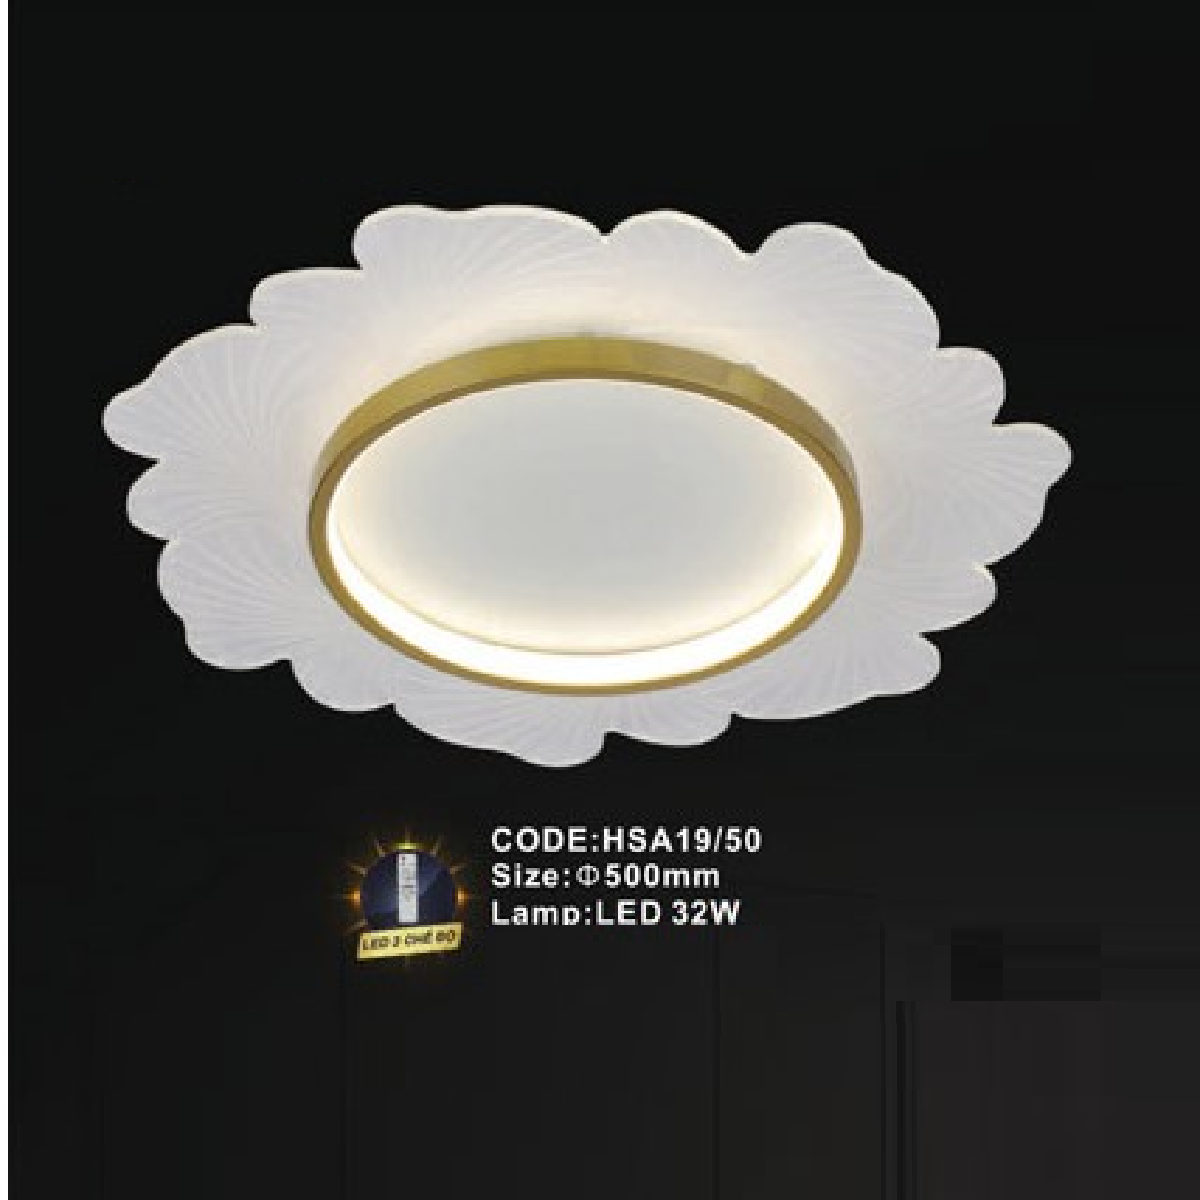 CODE: HSA19/50: Đèn áp trần LED - KT: Ø500mm - Đèn LED 32W ánh sáng đổi 3 màu